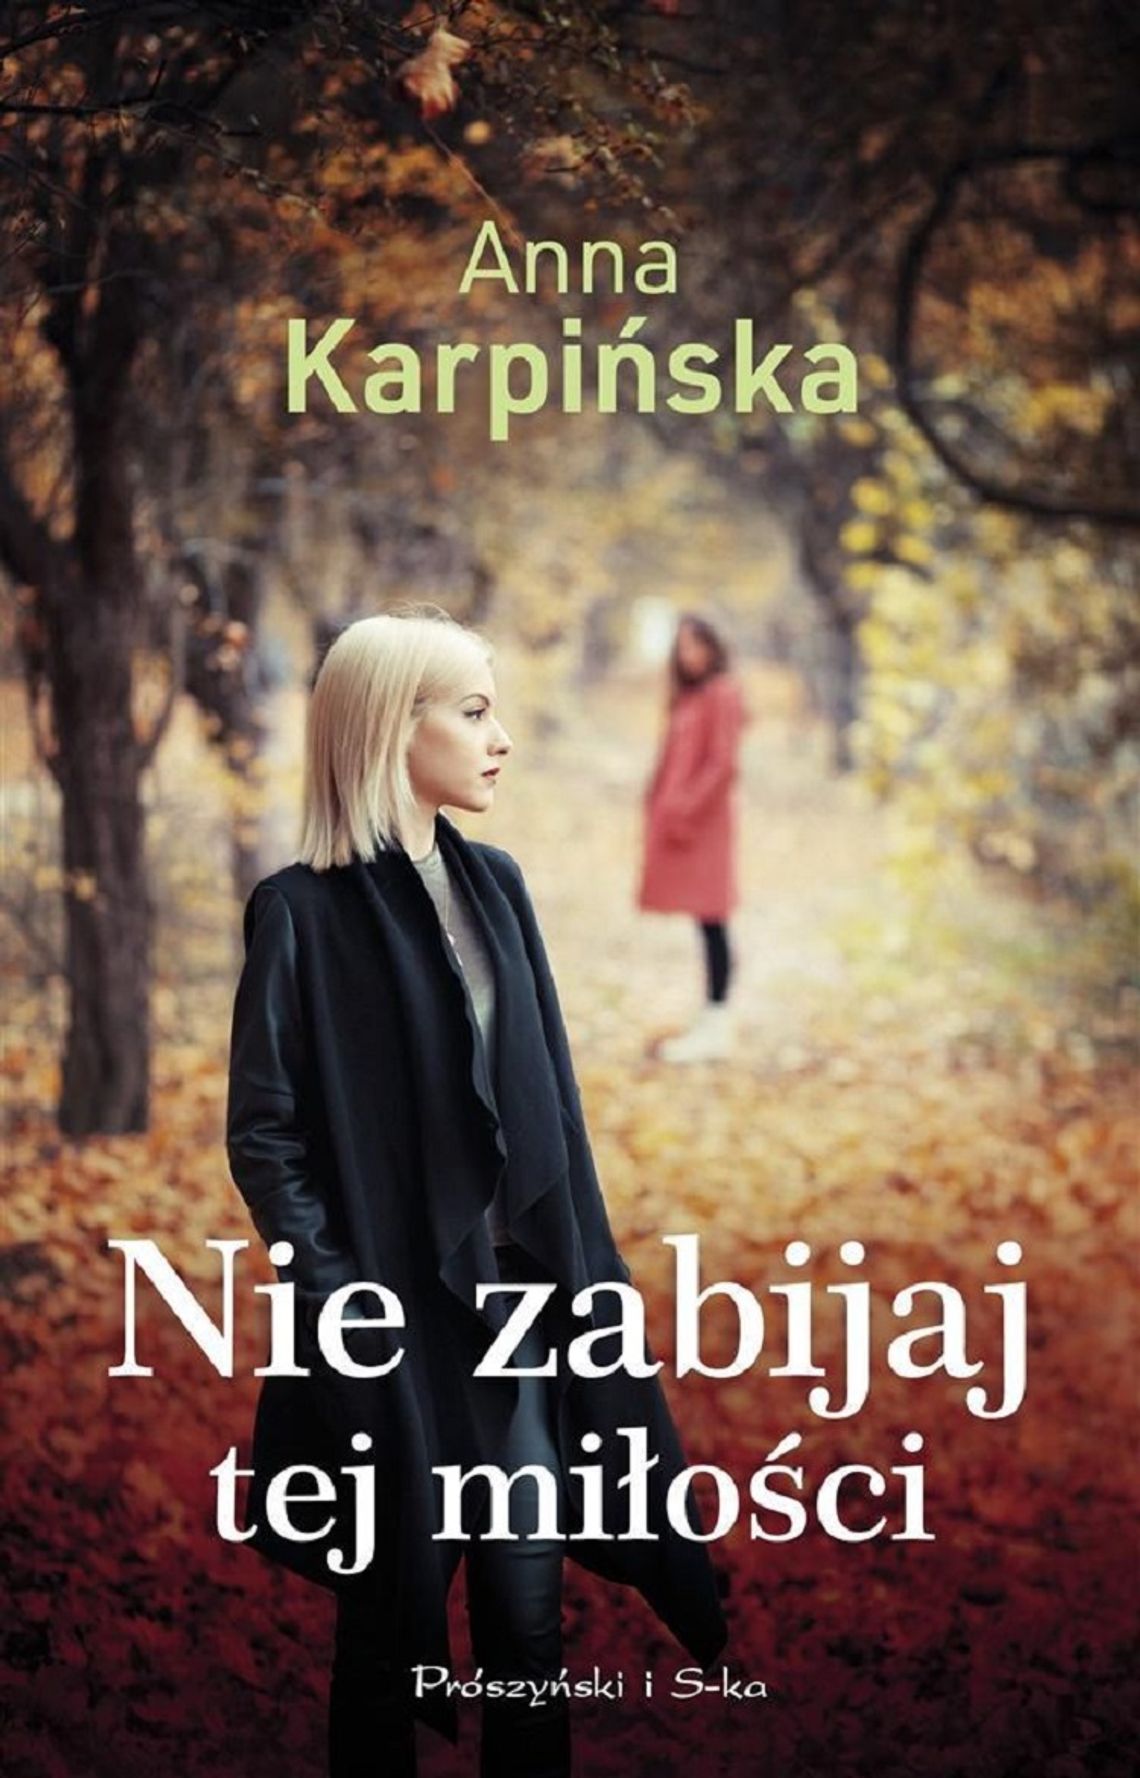 Anna Karpińska "Nie zabijaj tej miłości"; wyd. Prószyński i S-ka